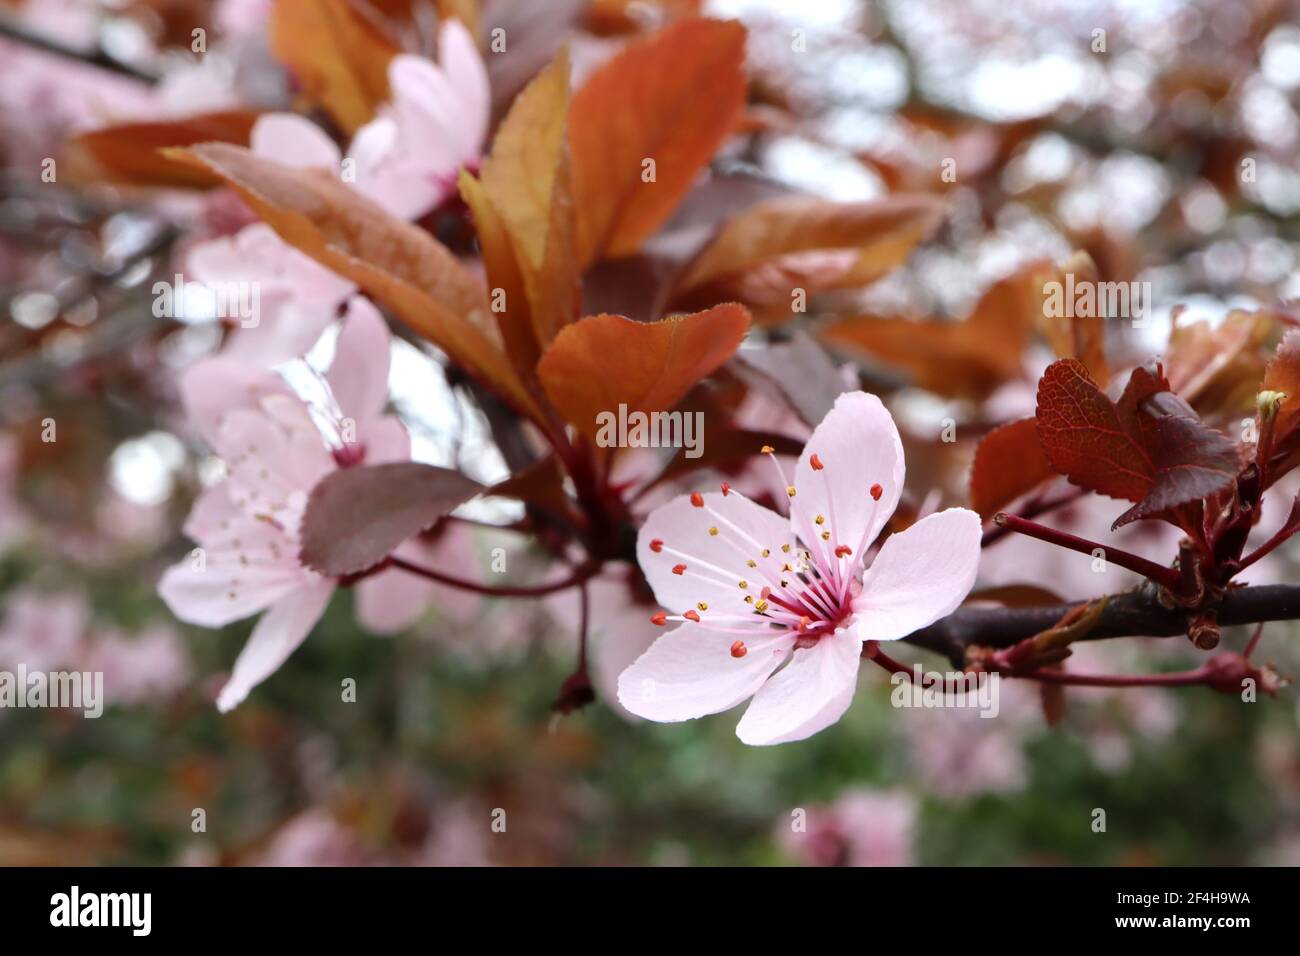 Prunus cerasifera Pissardii Nigra viola ciliegia prugna – conchiglia rosa fiori a forma di ciotola, stocchi rossi, foglie marroni, marzo, Inghilterra, Regno Unito Foto Stock